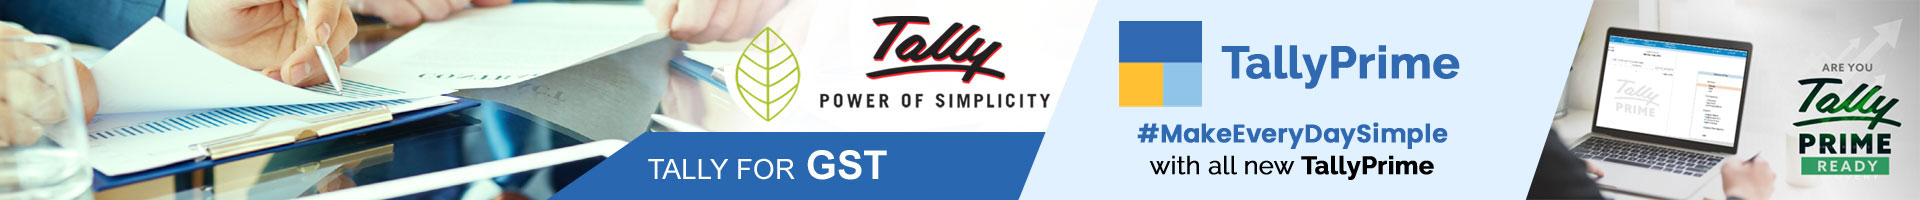 Tally 3 Star Certified Partner Company  - Modi Infotech Services